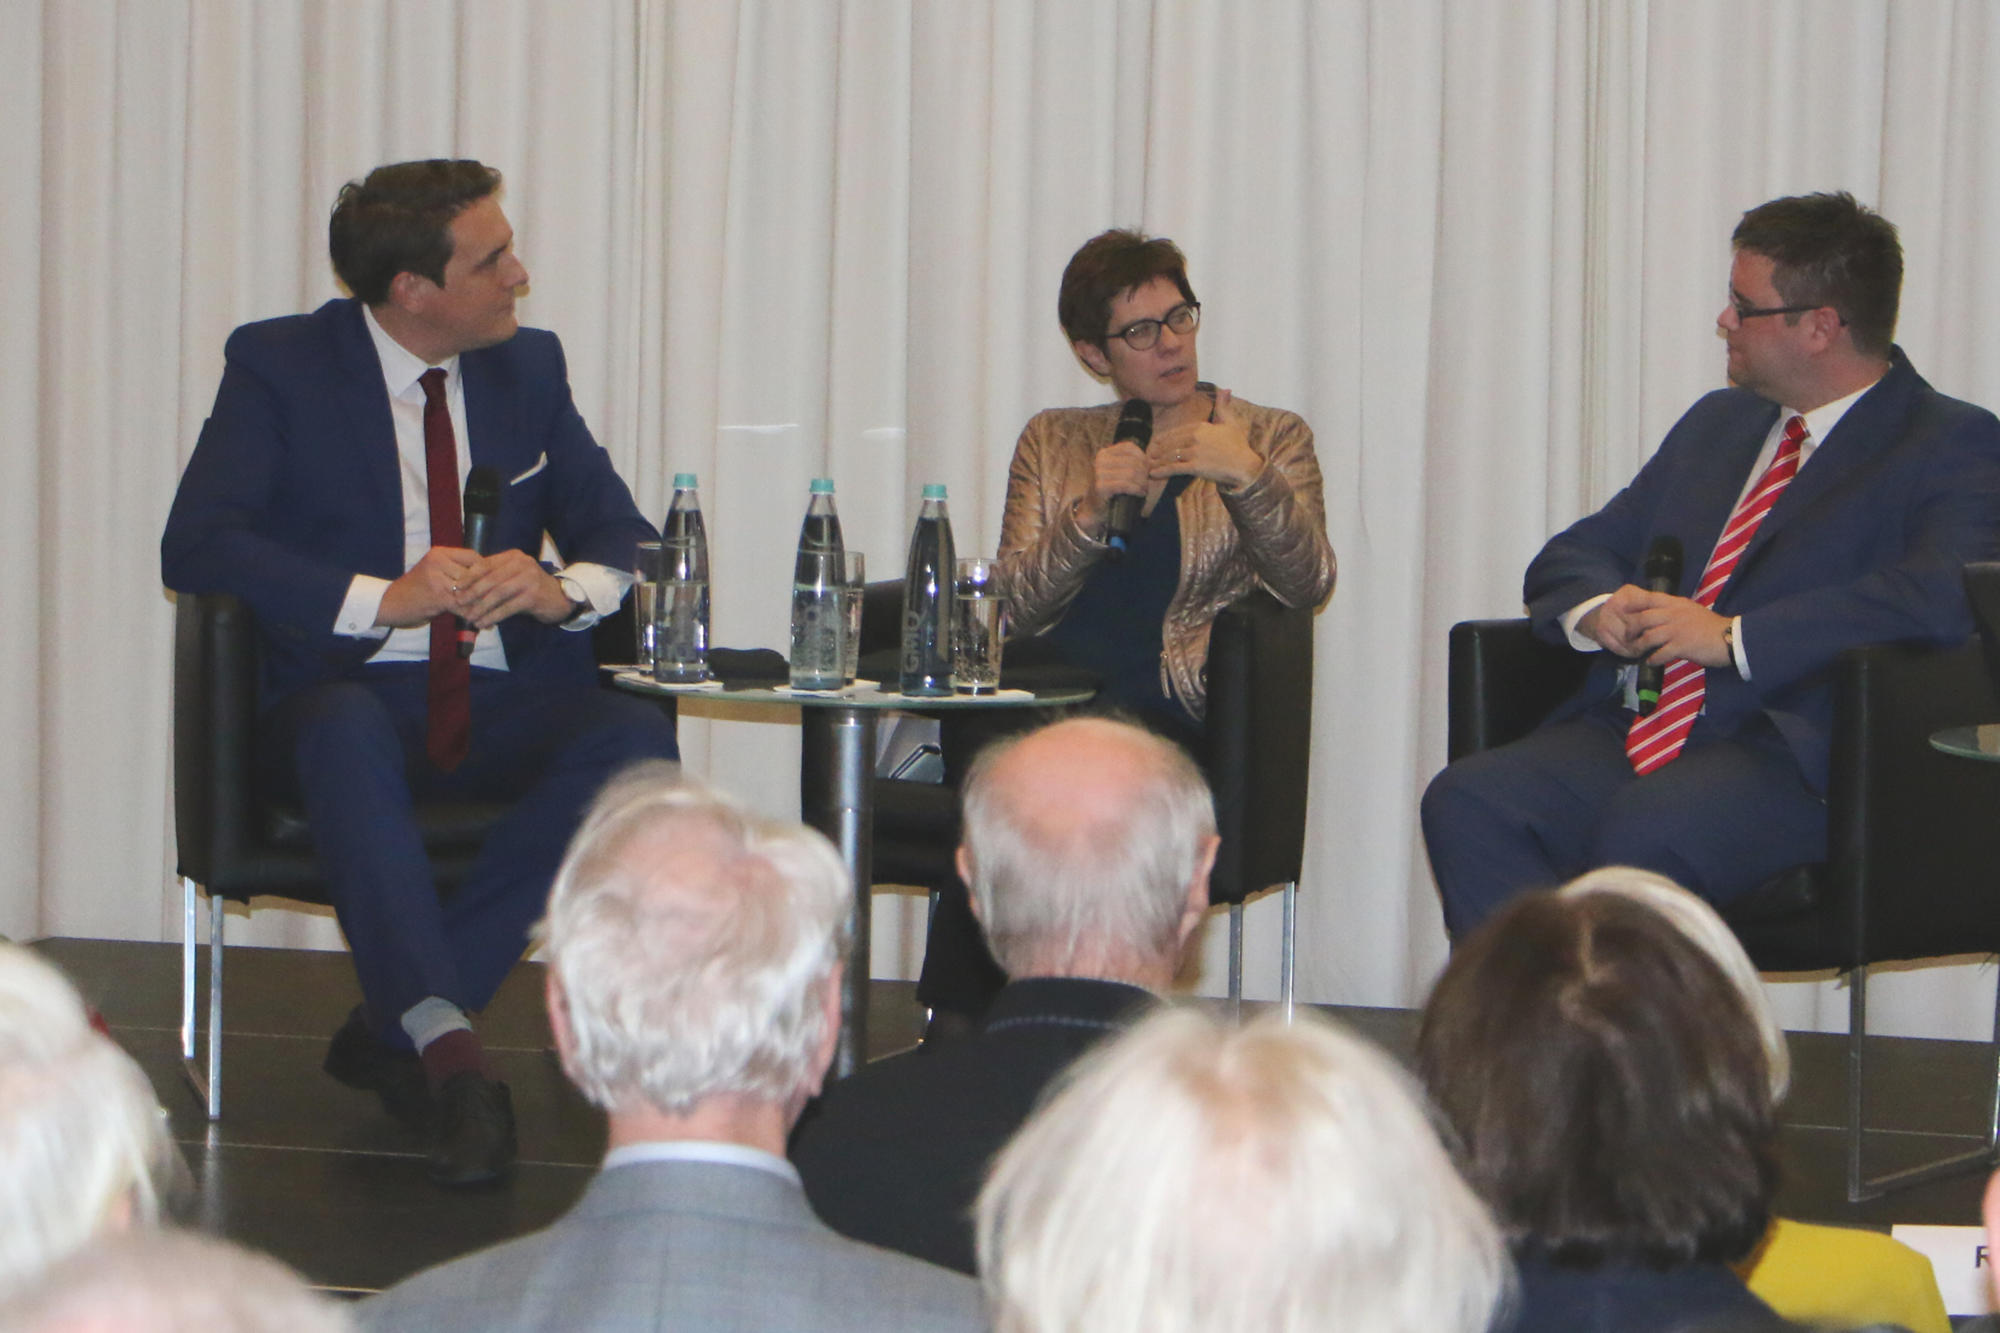 Diskussionsrunde mit Moritz Rödle (Saarländischer Rundfunk), Ministerpräsidentin Annegret Kramp-Karrenbauer und Philipp Krämer von der Freien Universität Berlin.